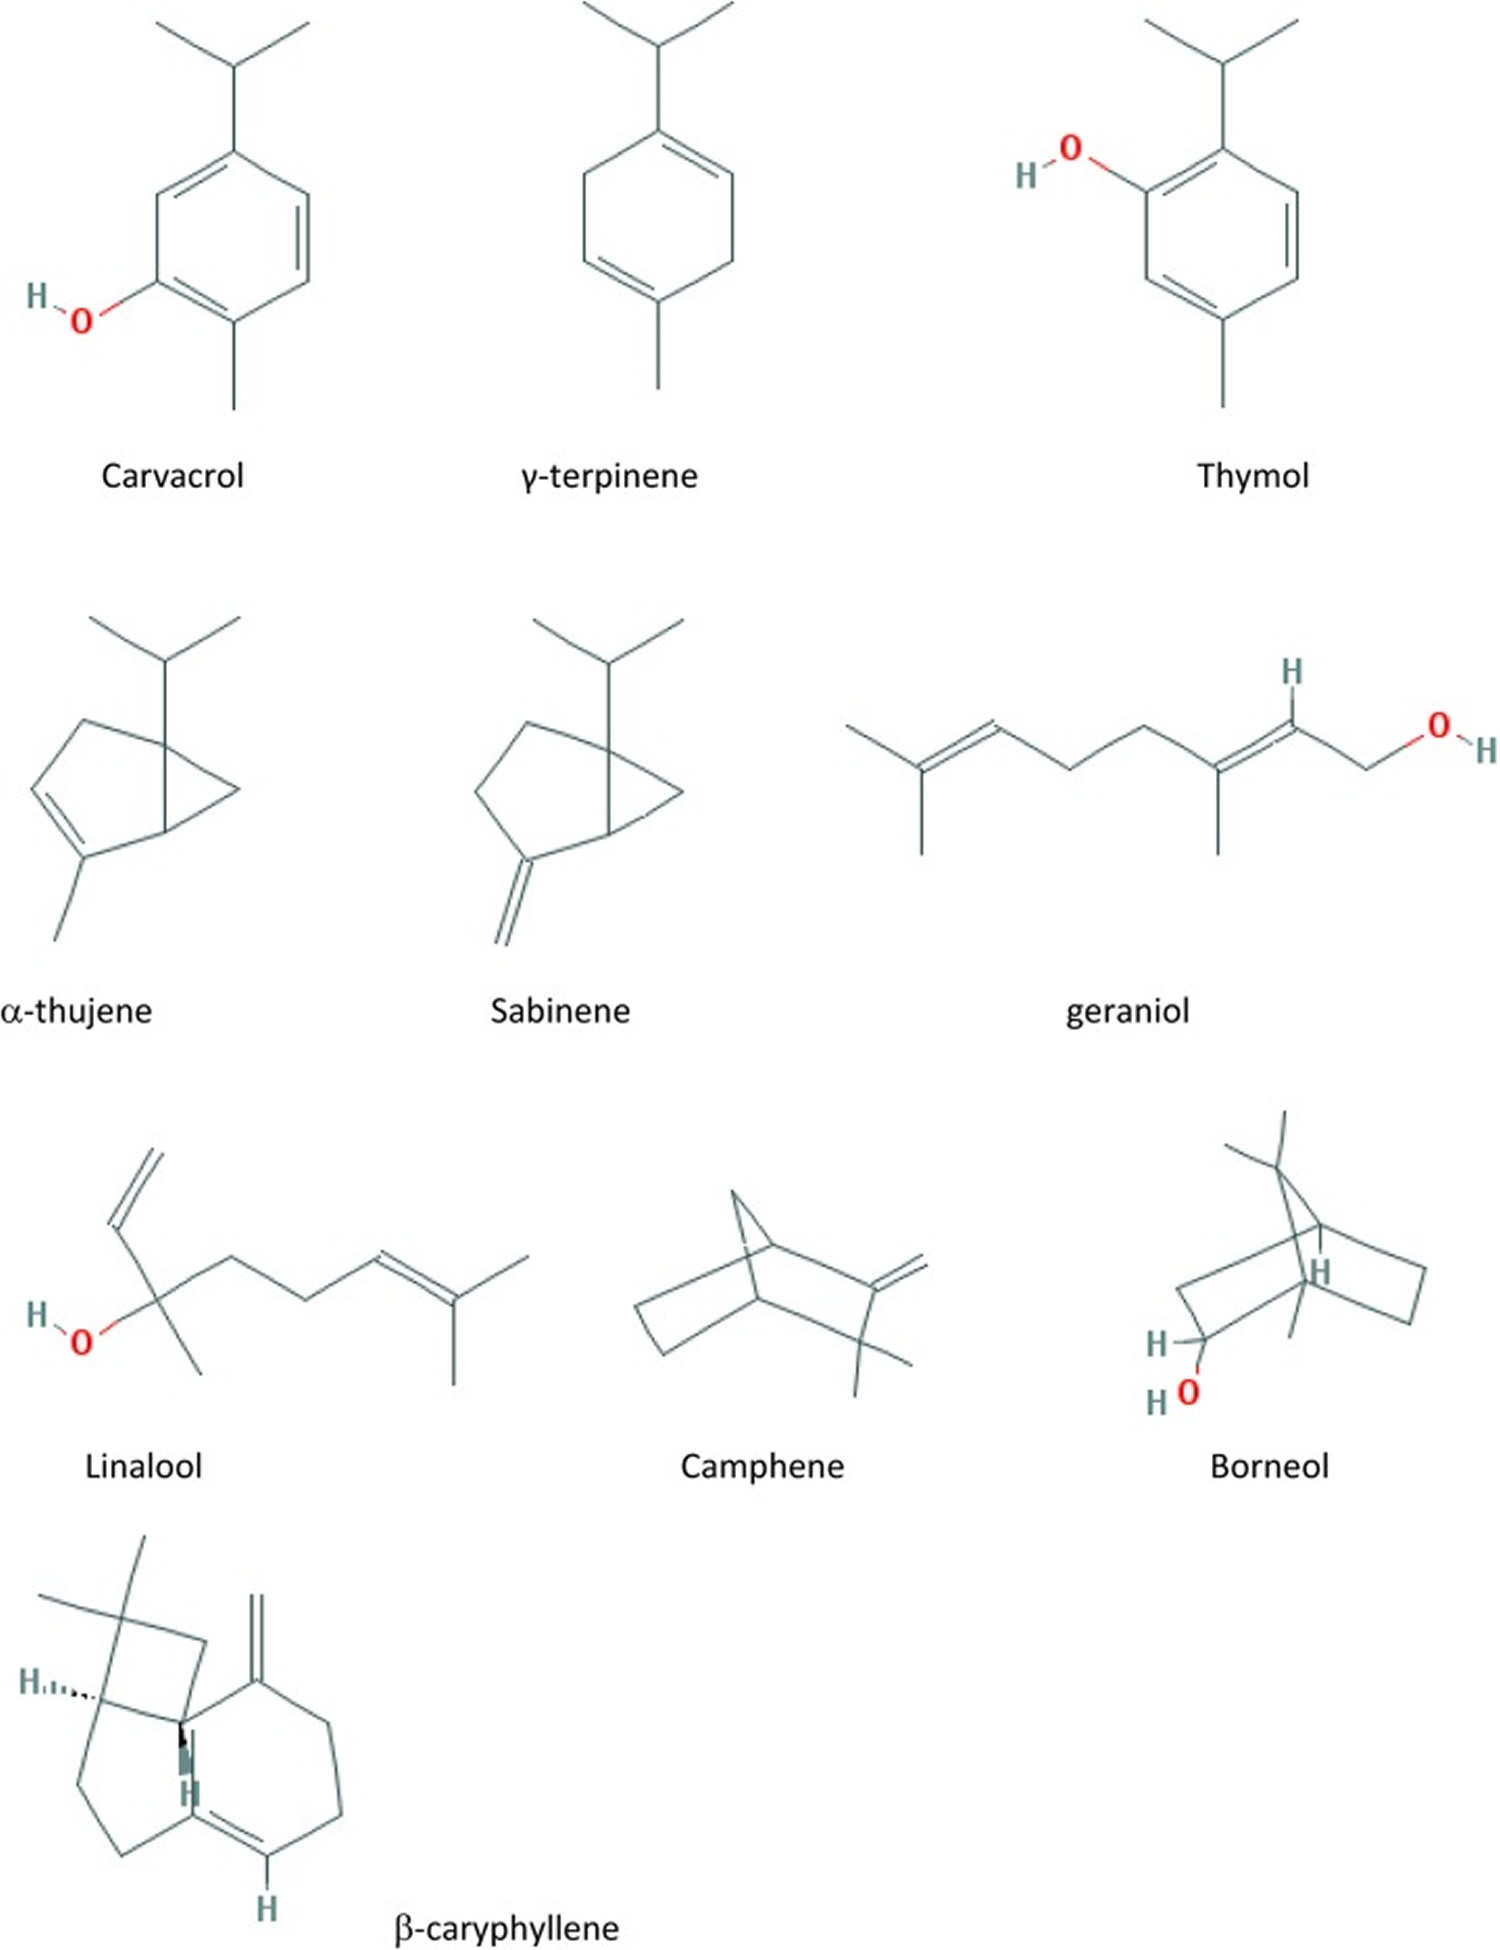 Marjoram active compounds